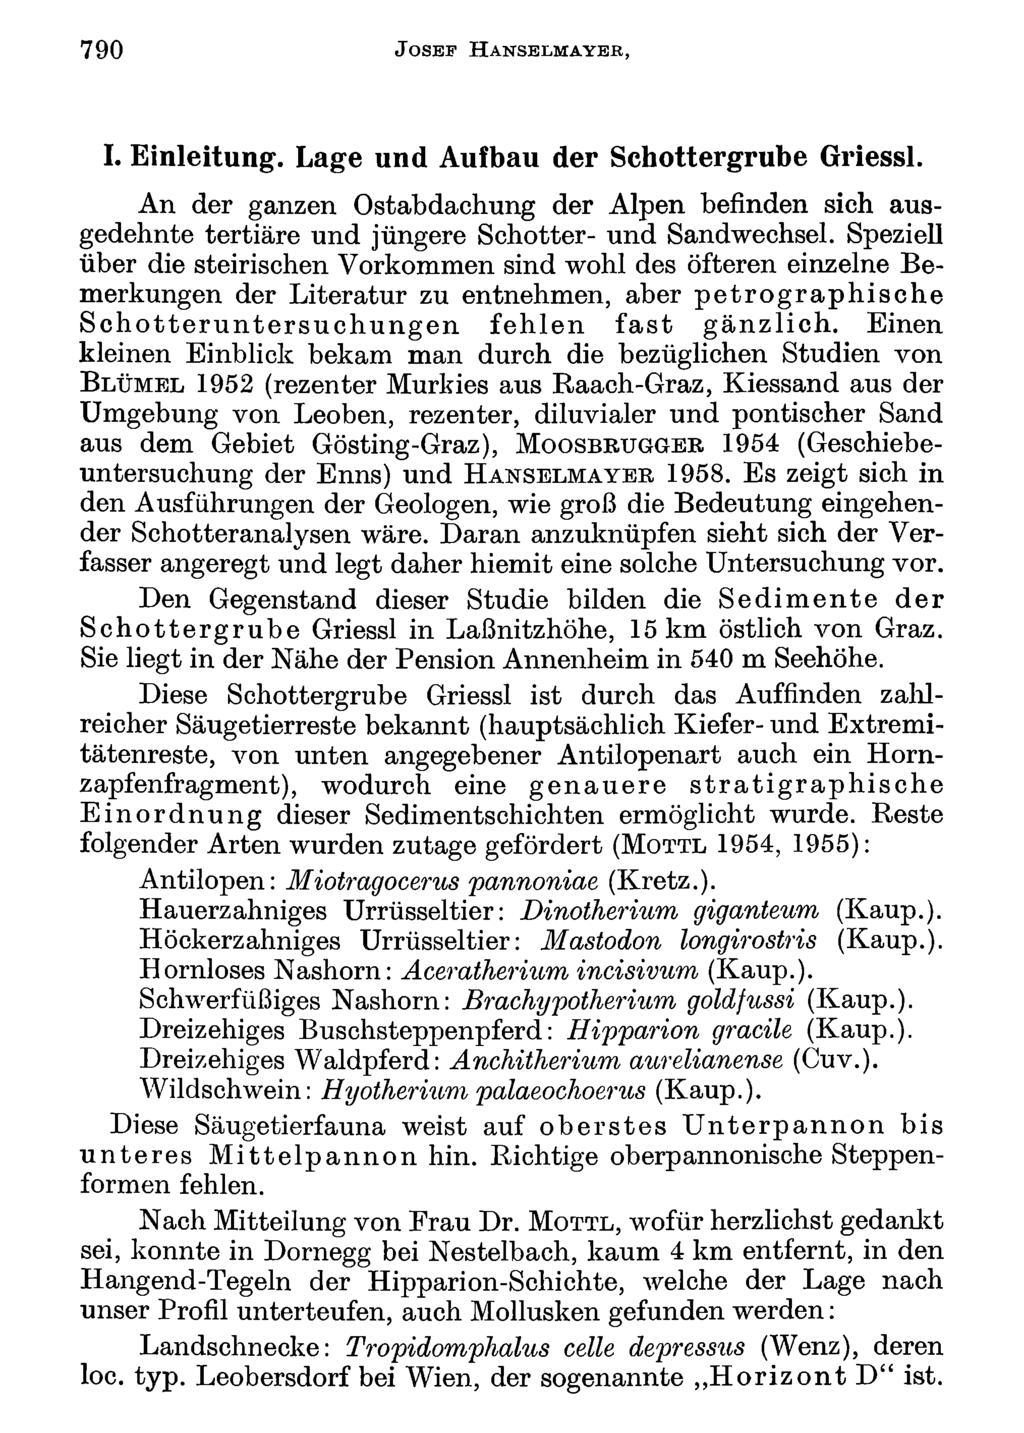 790 J o s e f H a n s e l m a y e r, Akademie d. Wissenschaften Wien; download unter www.biologiezentrum.at I. Einleitung. Lage und Aufbau der Schottergrube Griessl.